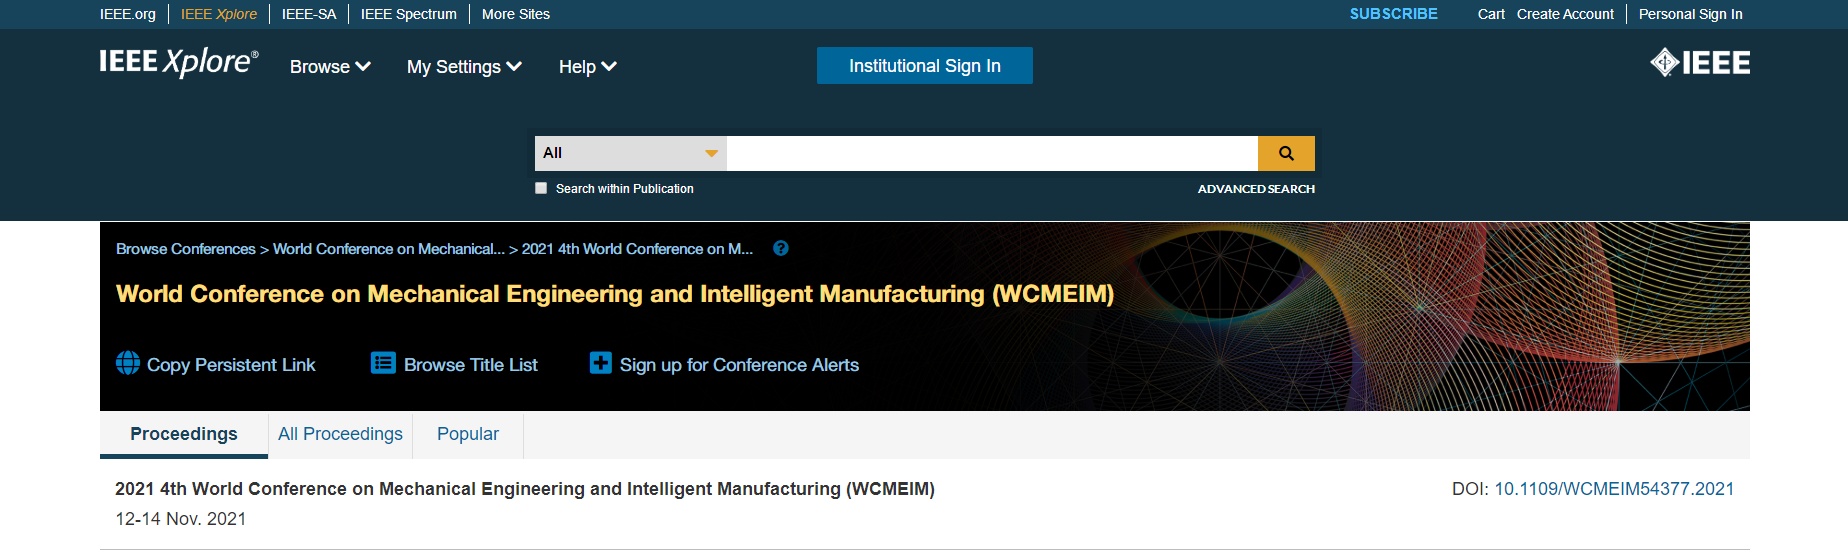 WCMEIM2021_IEEE.png